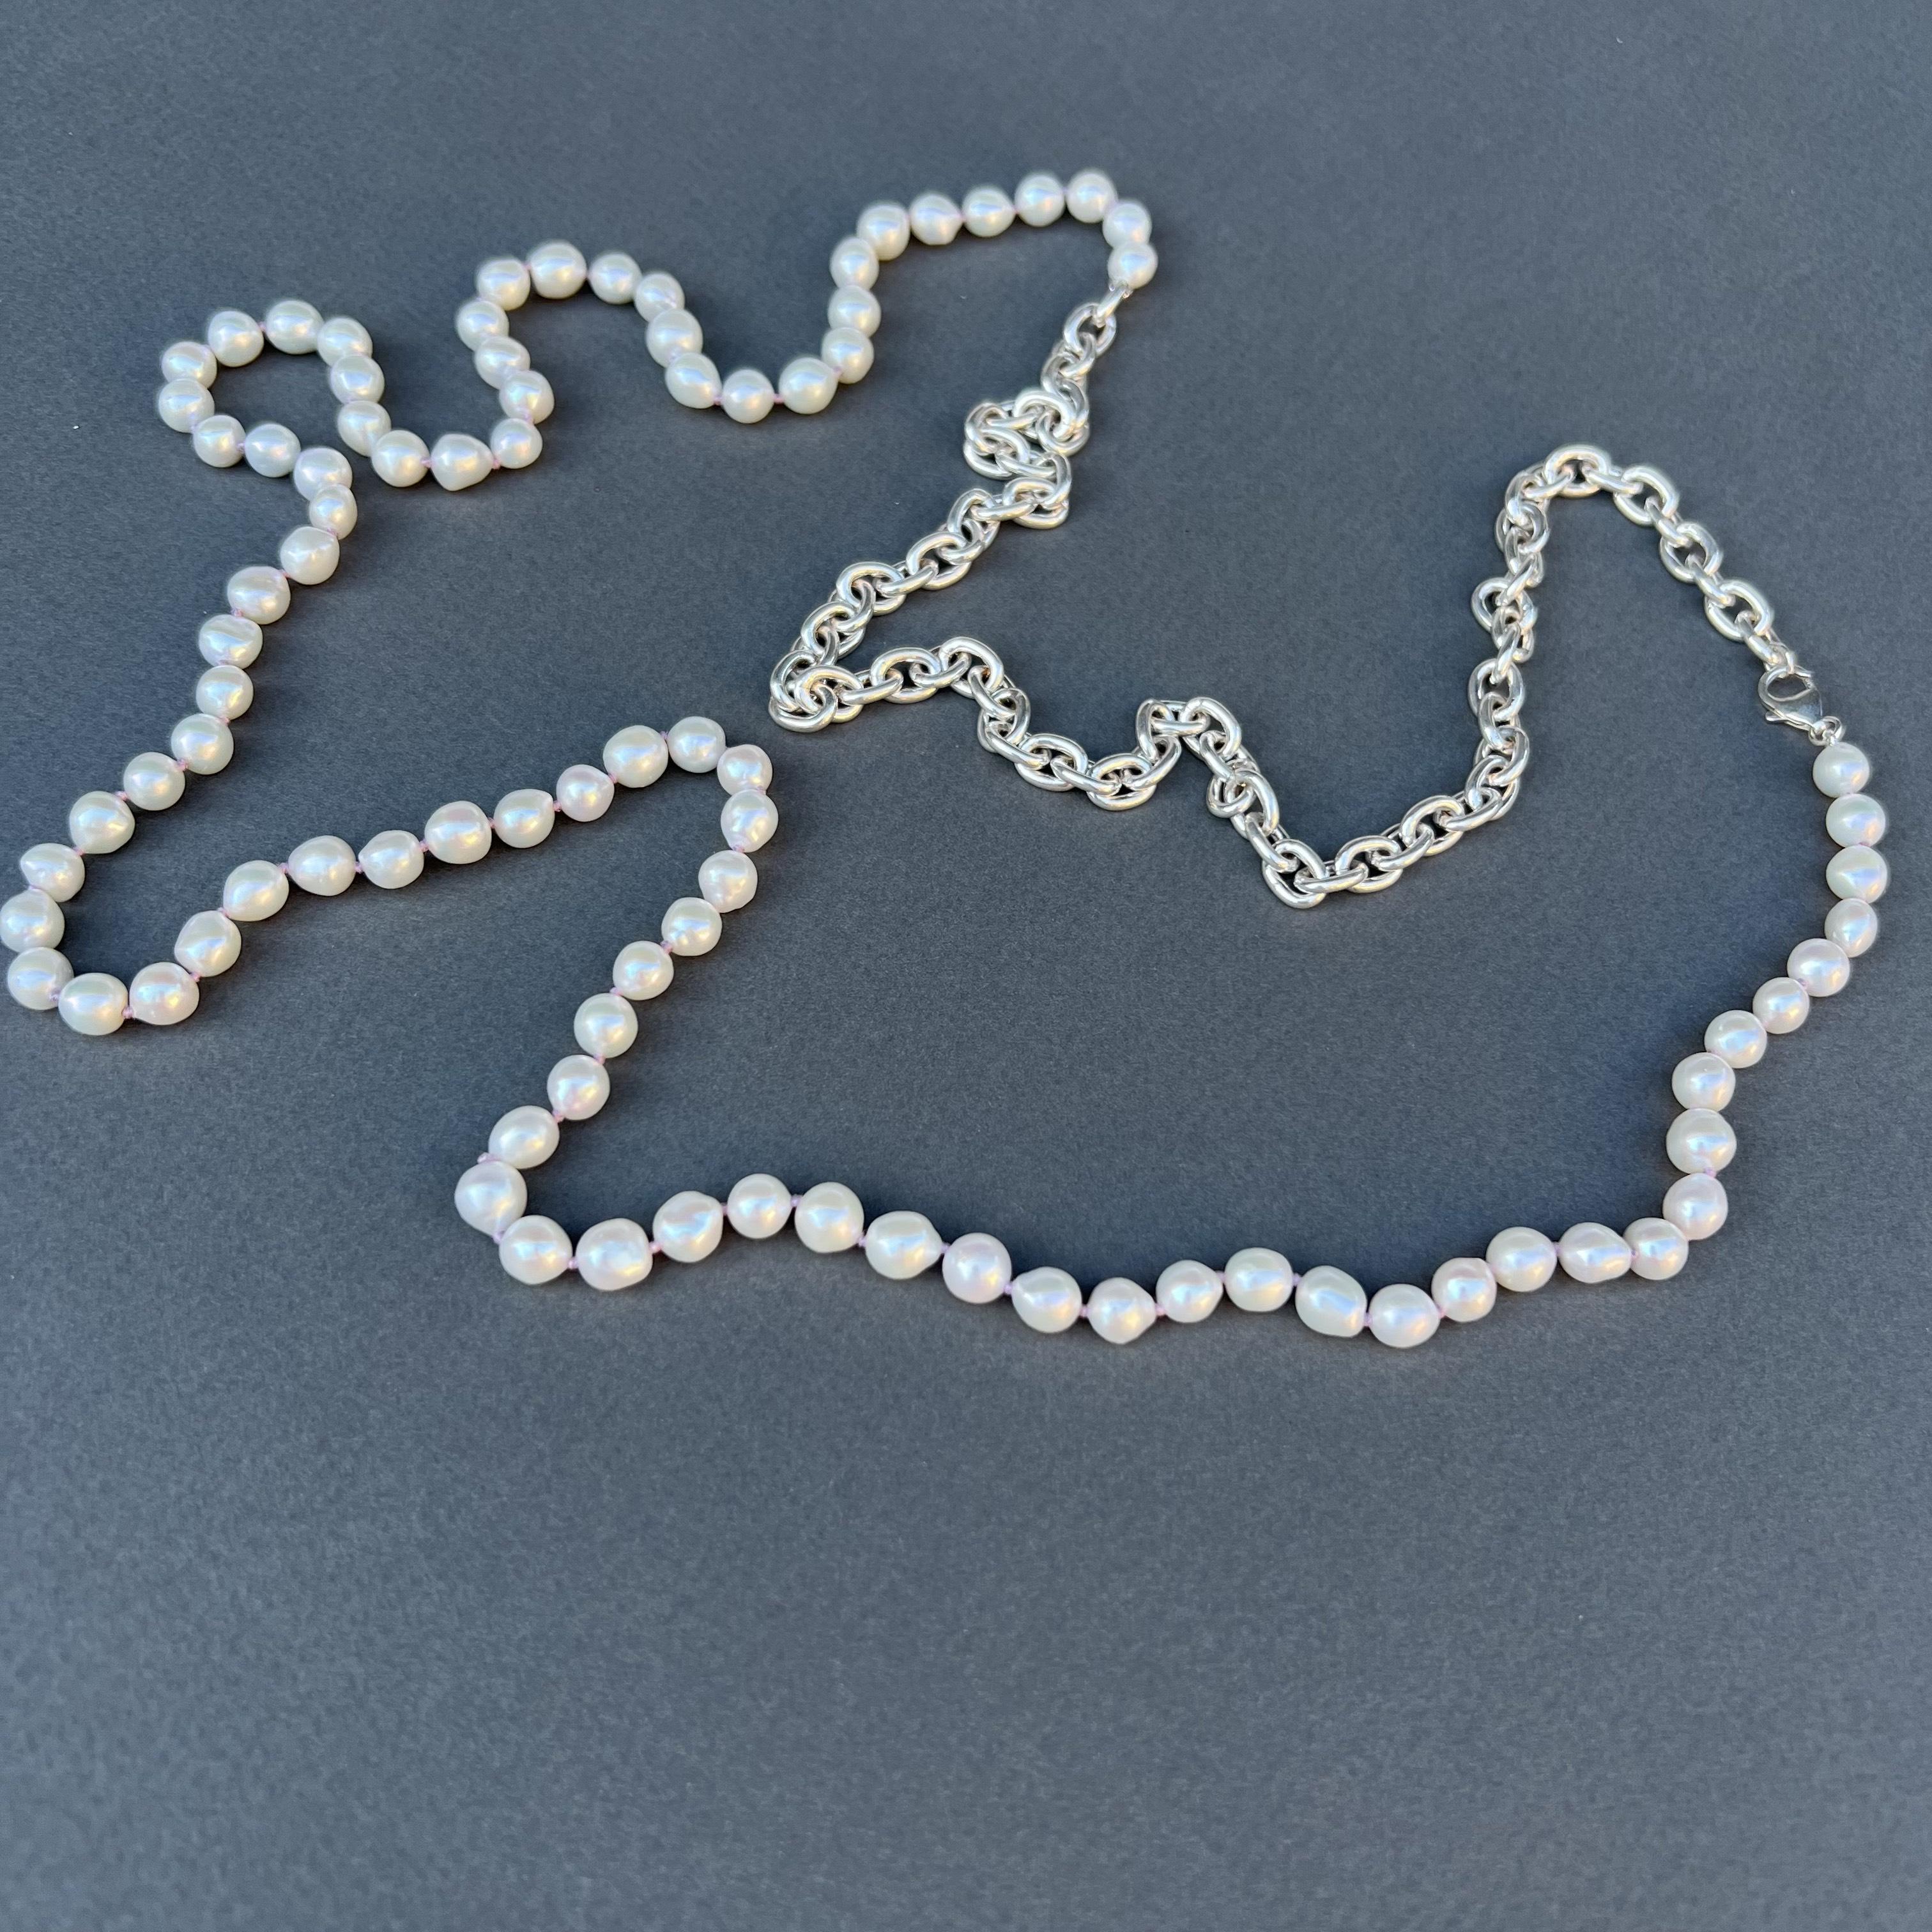 Collier de perles blanches en chaîne argentée - nœuds de fil de soie lilas entre chaque perle 
L'argent est de l'argent massif 925
36